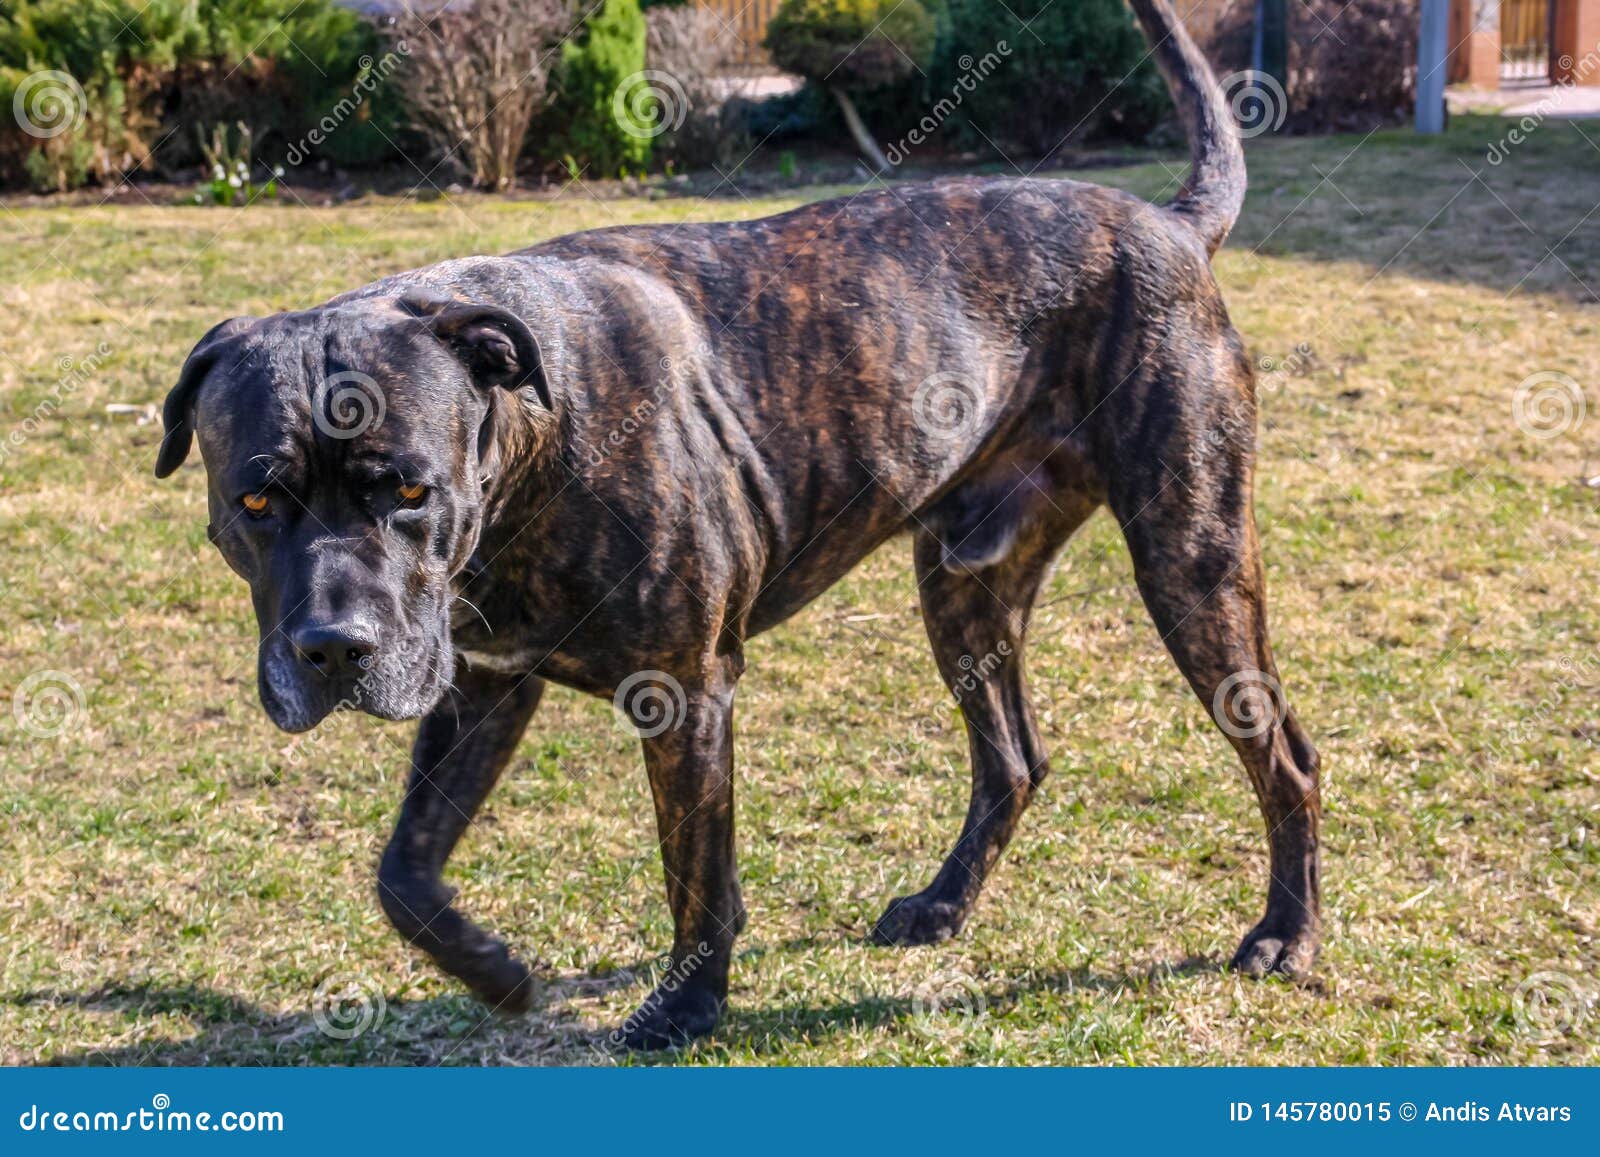 Cane Corso Dog Walking Stock Image Image Of Brindle 145780015